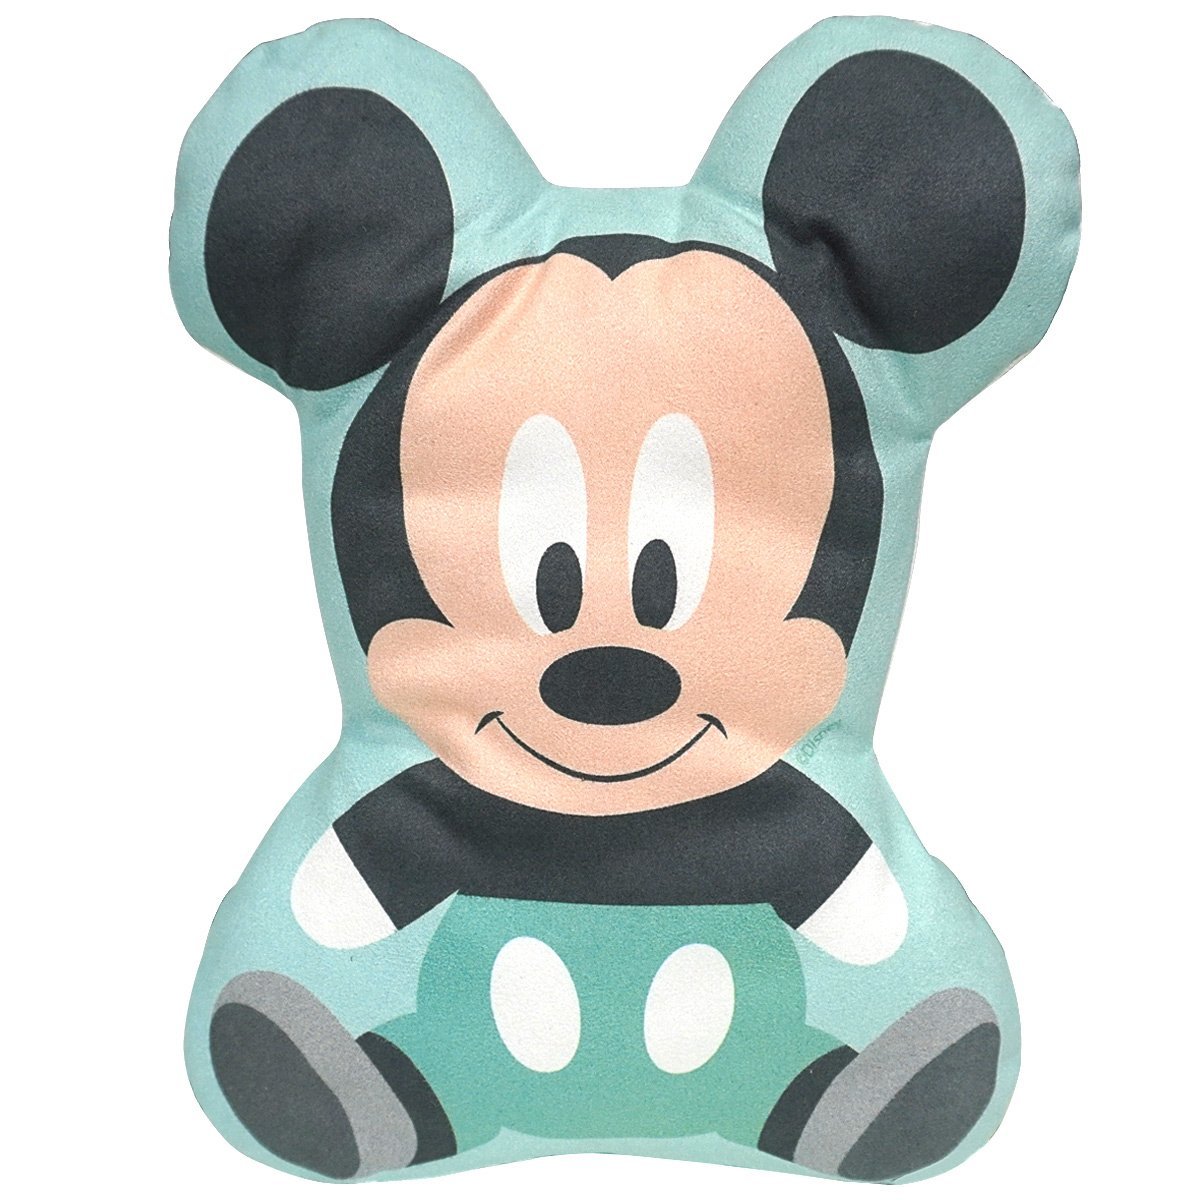 Almofada 2D Berço Bebê Recém Nascido Infantil Macio Lavável Disney Mickey BabyGo Baby Go Almofada - 